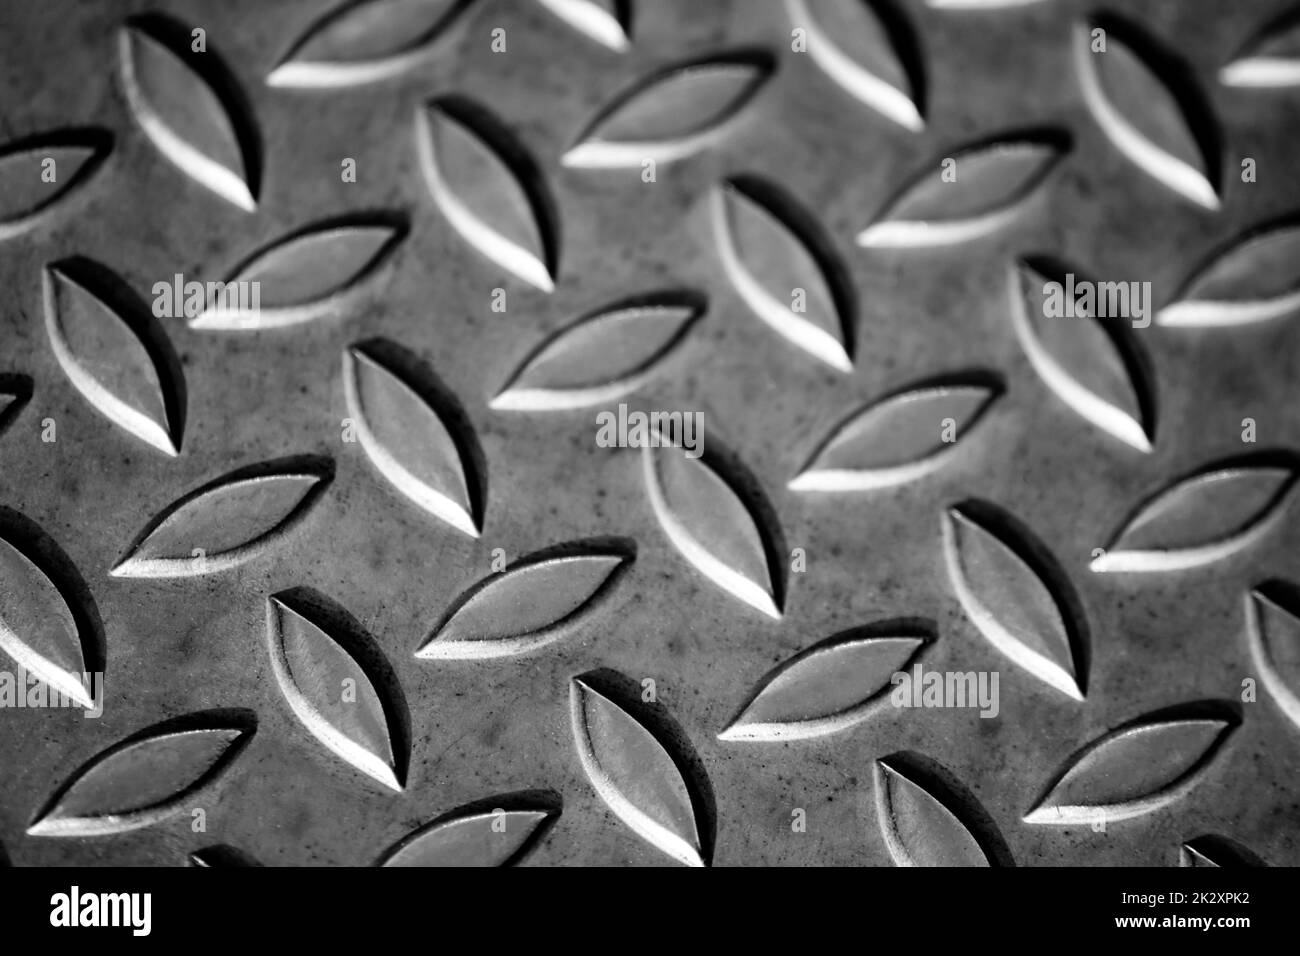 Die massive Oberfläche aus Diamant-Metall zeigt Edelstahlböden in der industriellen Fertigung als Steampunk-Hintergrund für Metalltreppen und schwere Stahlplatten zum Schutz und schwere gepanzerte Militärfahrzeuge Stockfoto